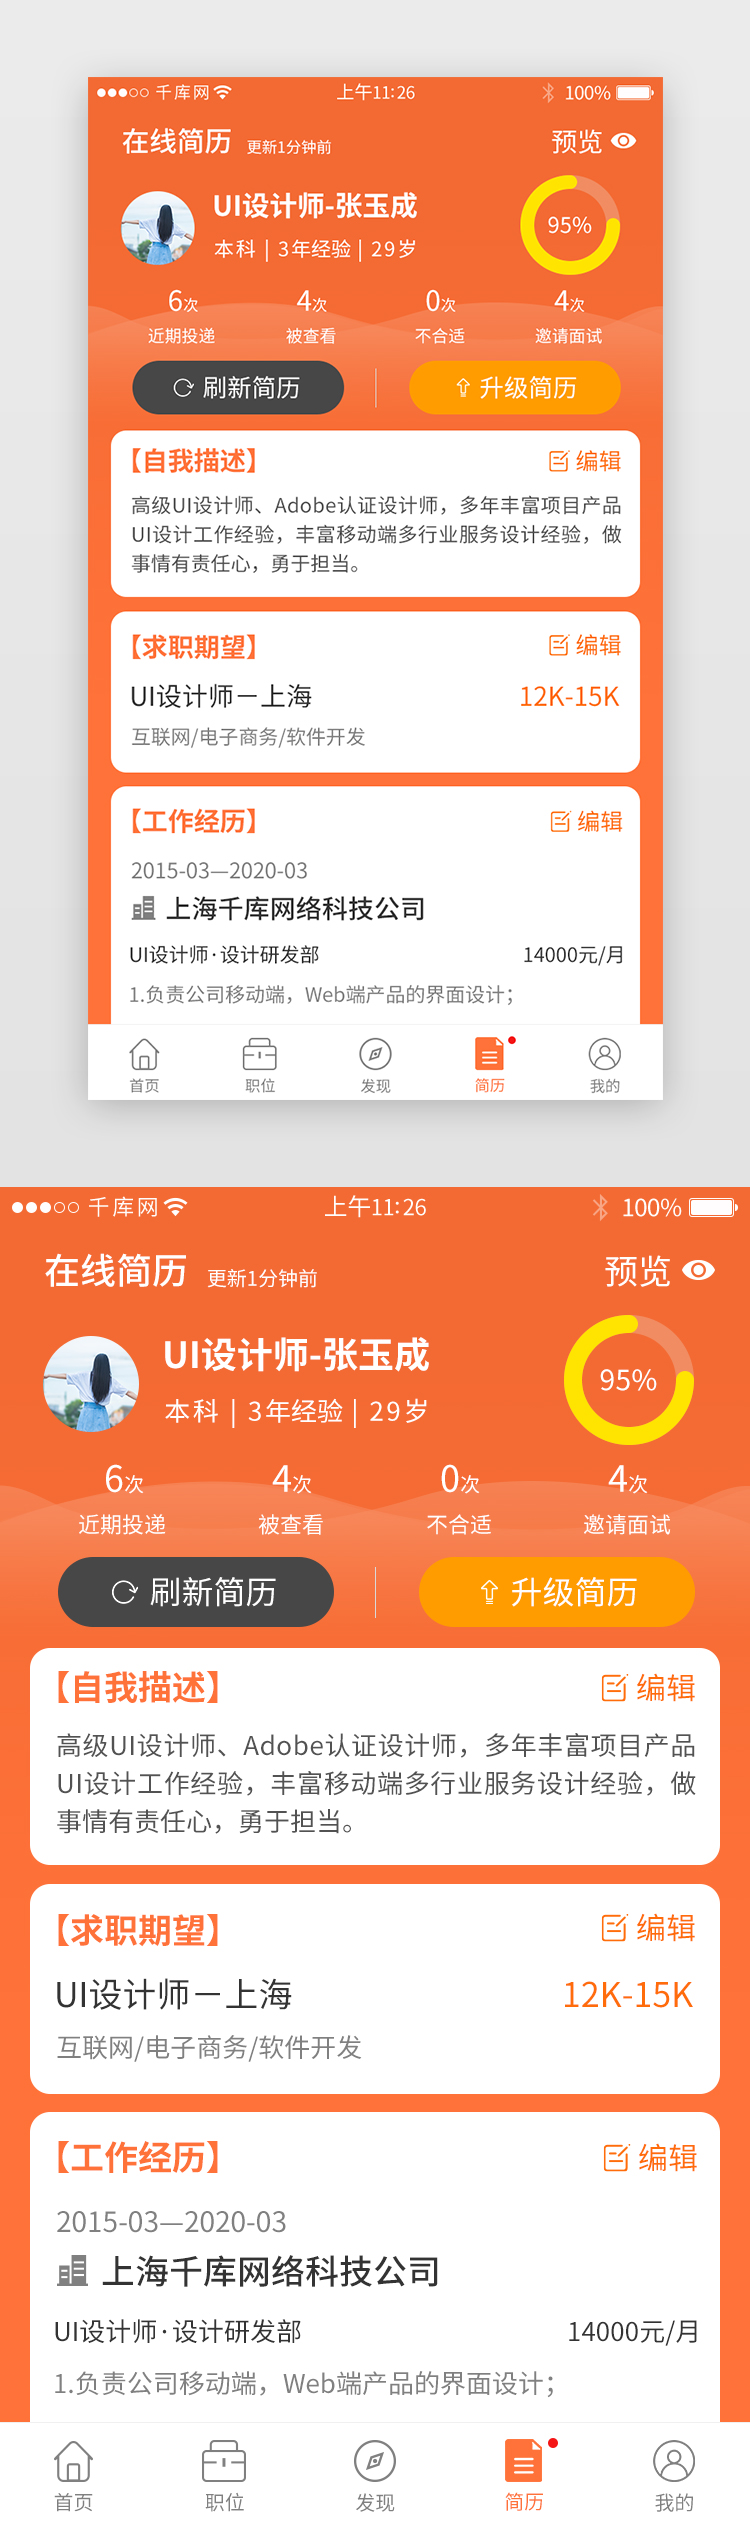 橙色系招聘app在线简历详情页图片